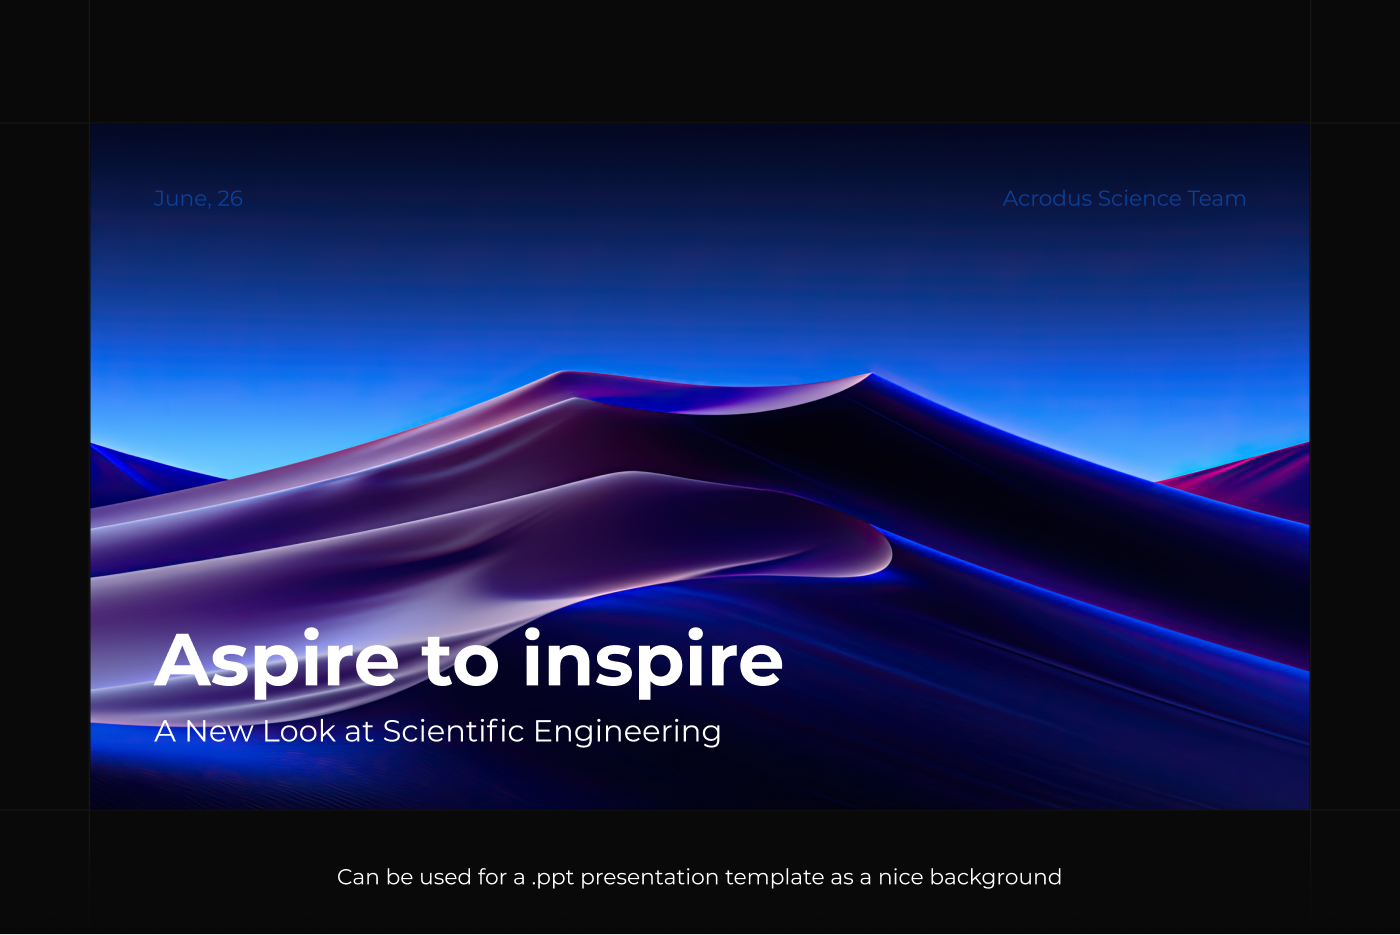 dunes background download template Mockup digital illustration banner blue Web Website Design